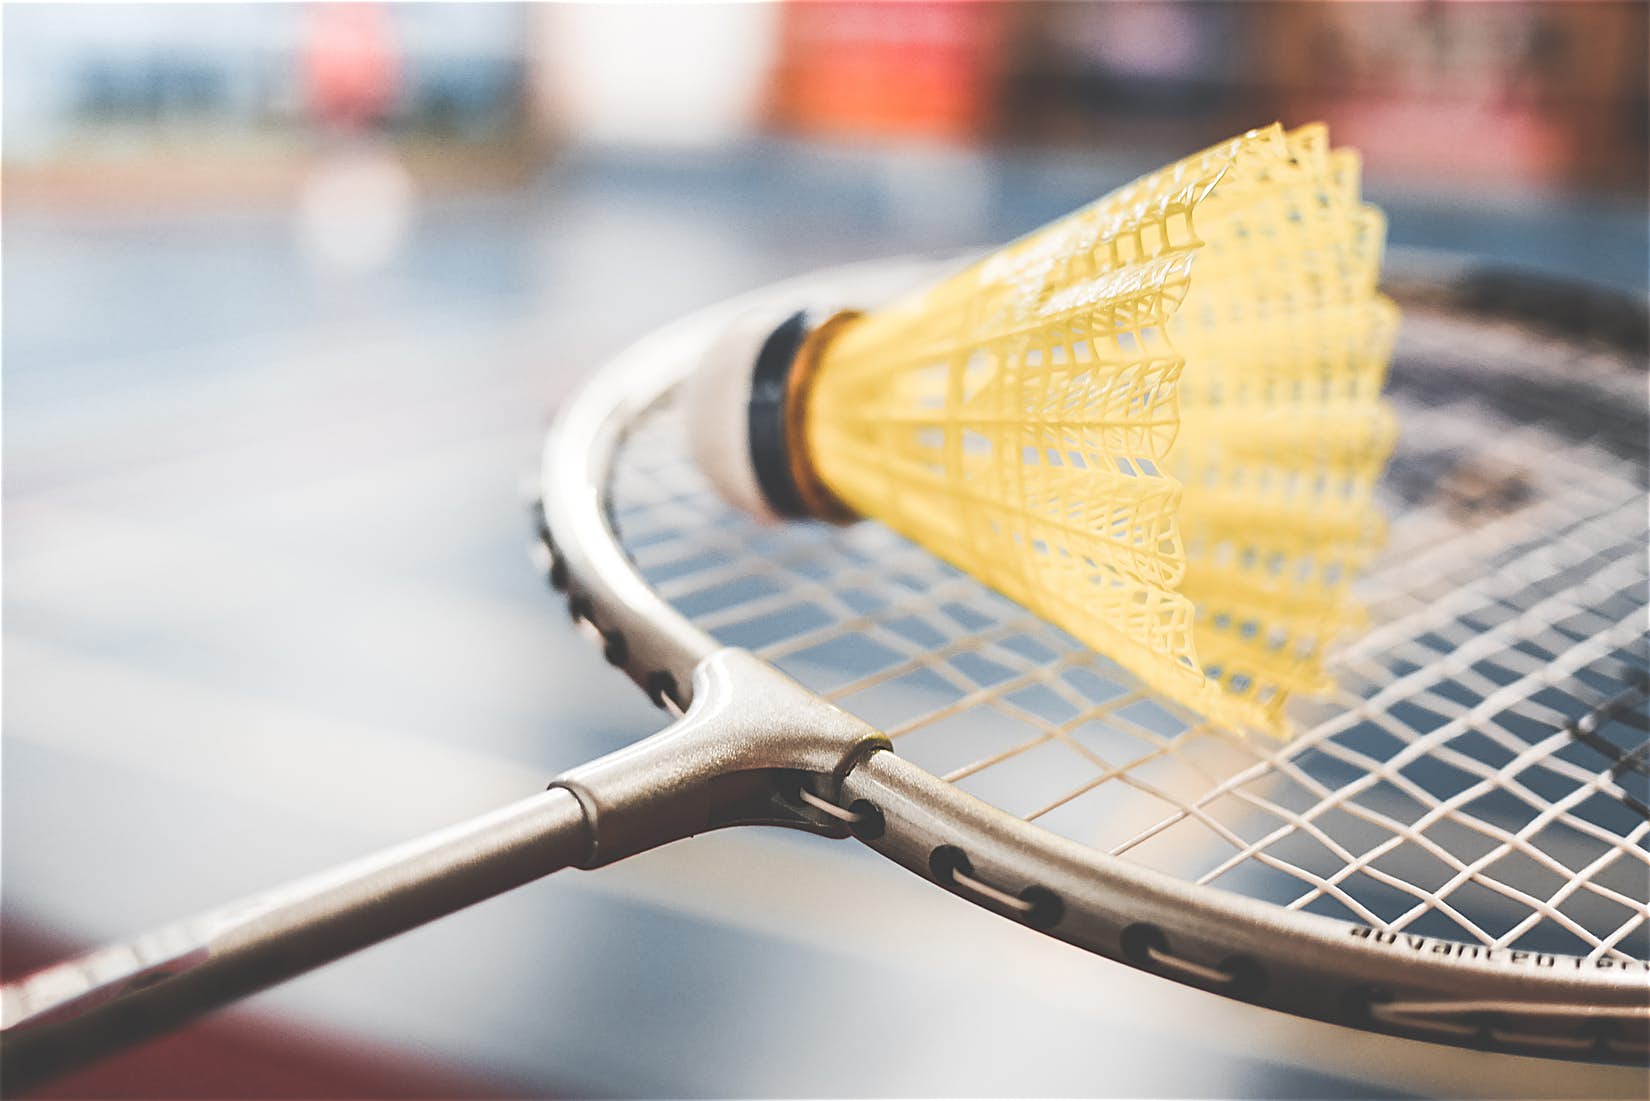 5 Tips Memilih Raket Badminton, Apa Saja yang Perlu Diperhatikan?